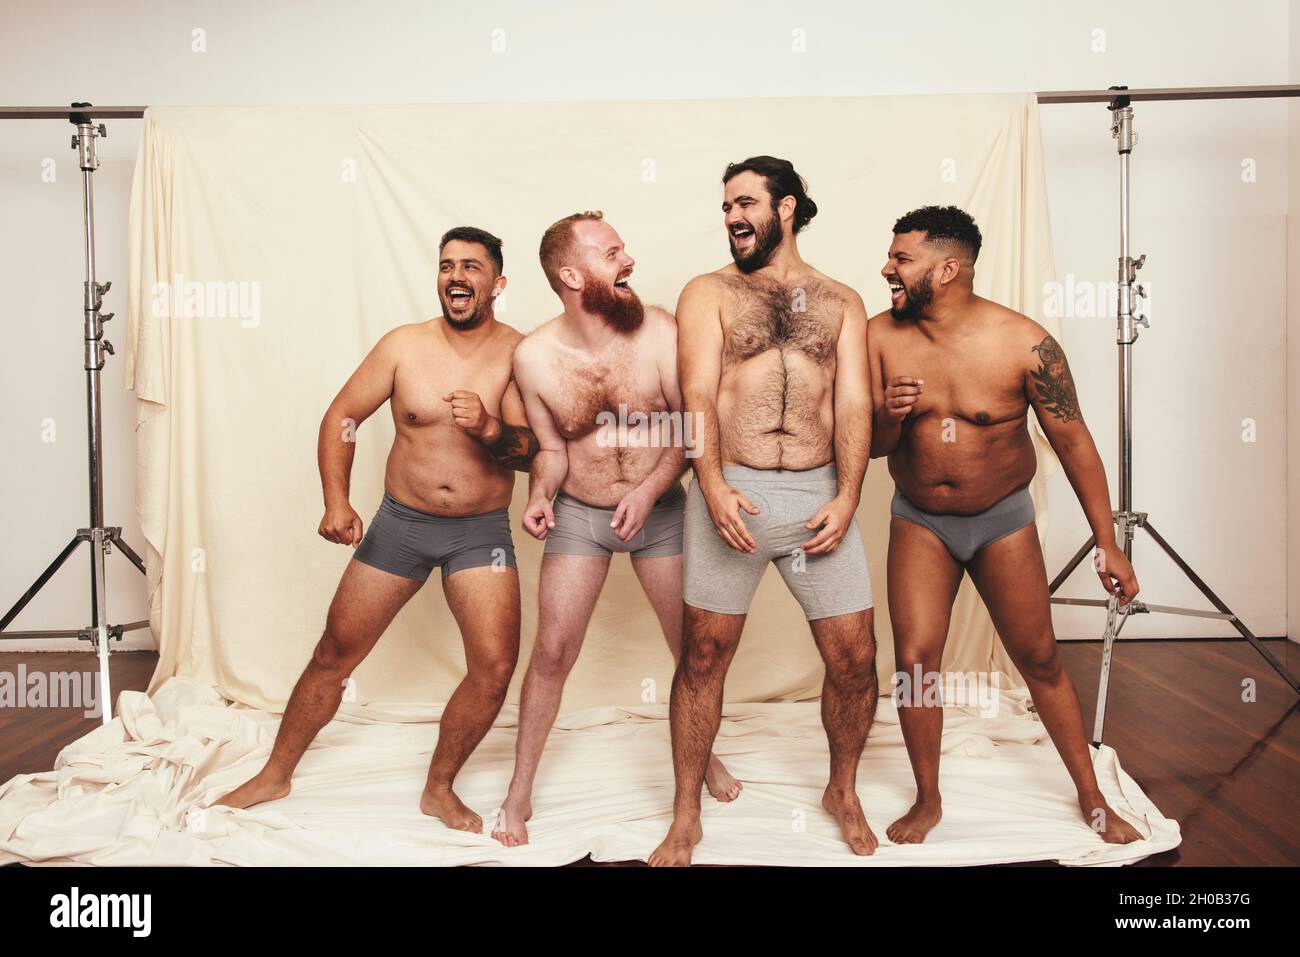 Natürlich zu sein macht Spaß. Vier körperpositive junge Männer lachen fröhlich, während sie in Unterwäsche zusammen stehen. Selbstbewusste junge Männer umarmen ihre Stockfoto